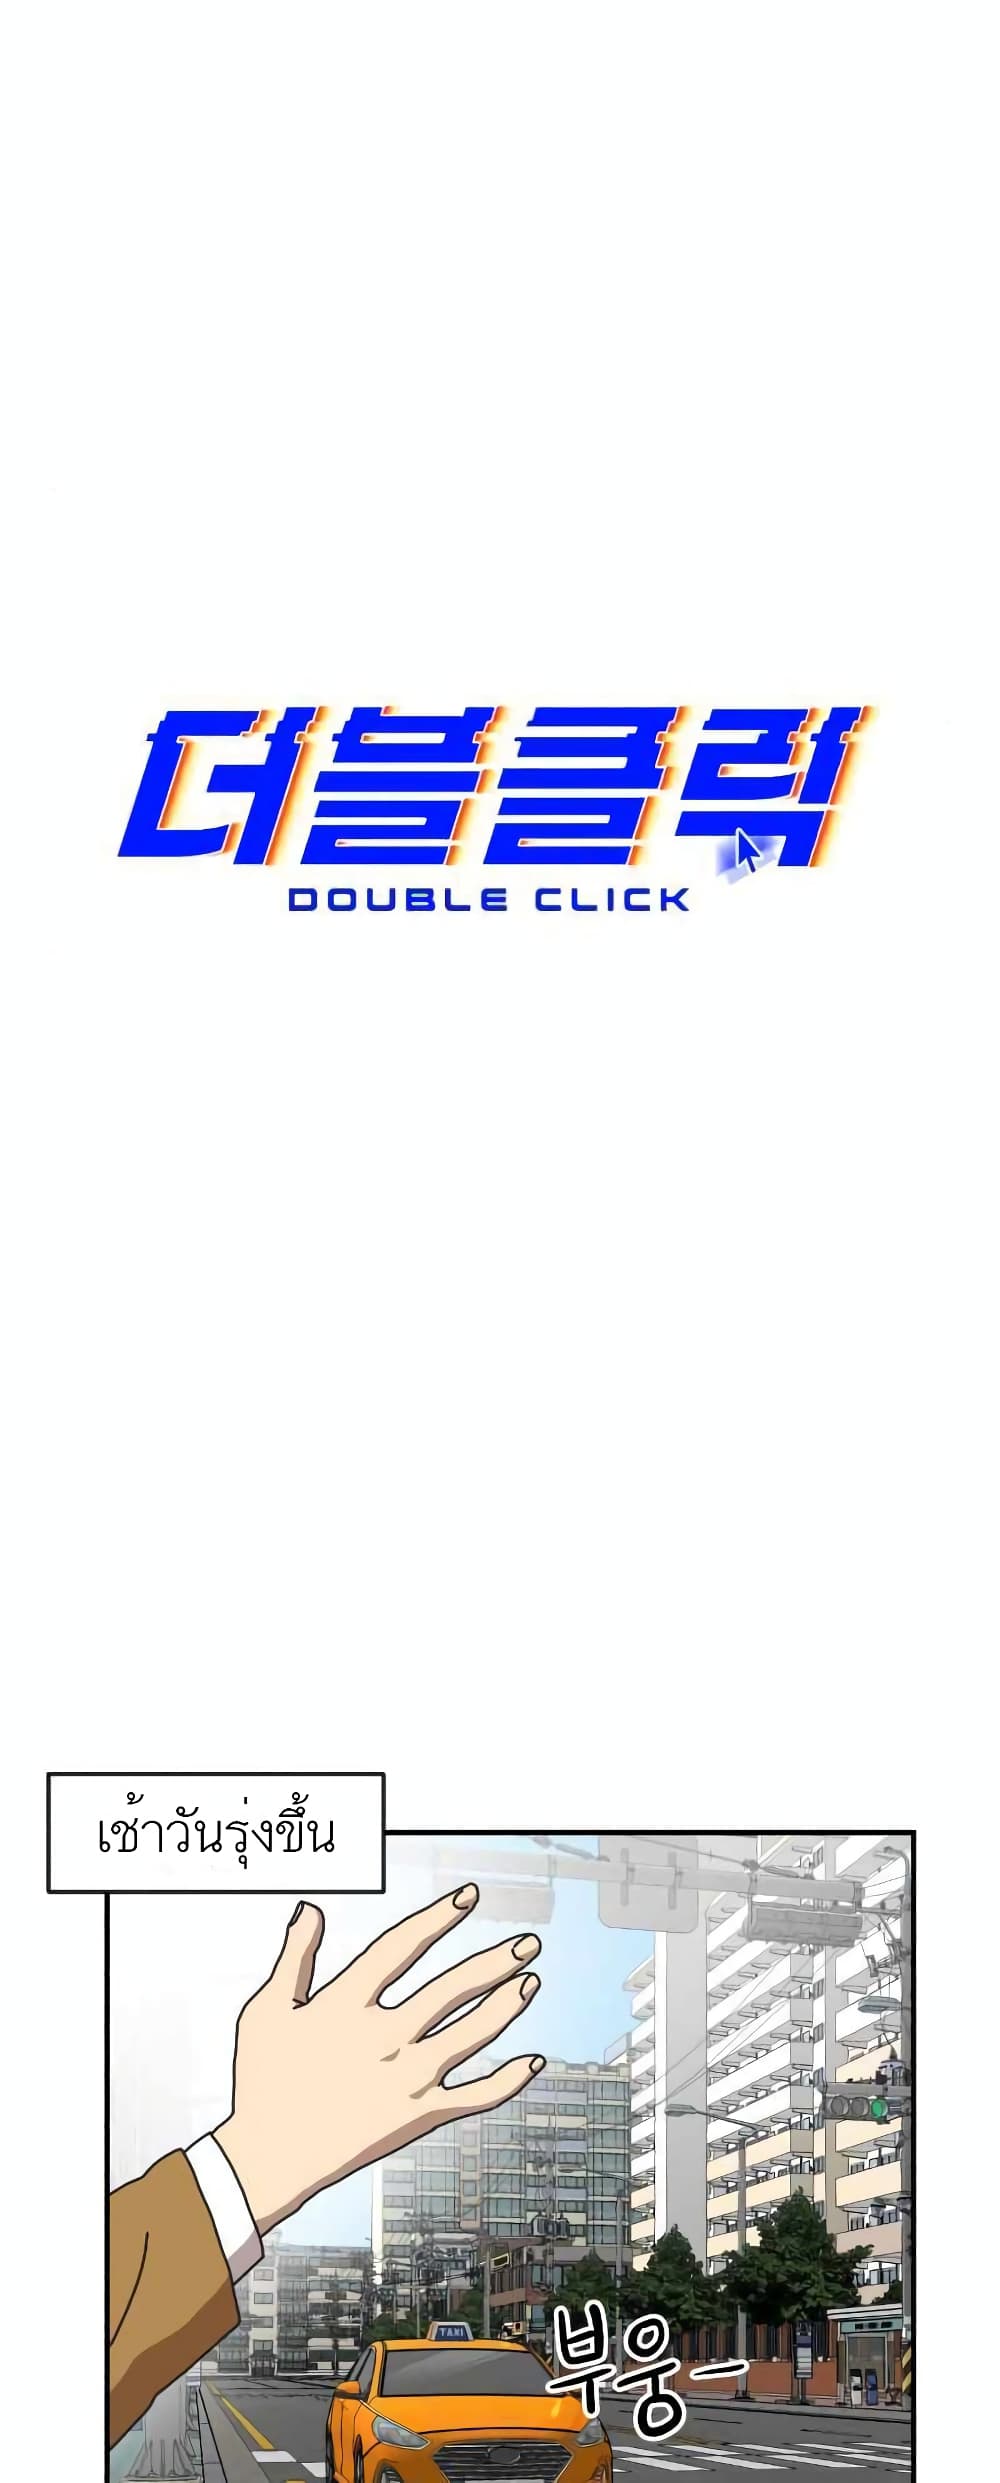 Double Click à¸•à¸­à¸™à¸—à¸µà¹ˆ 14 (18)